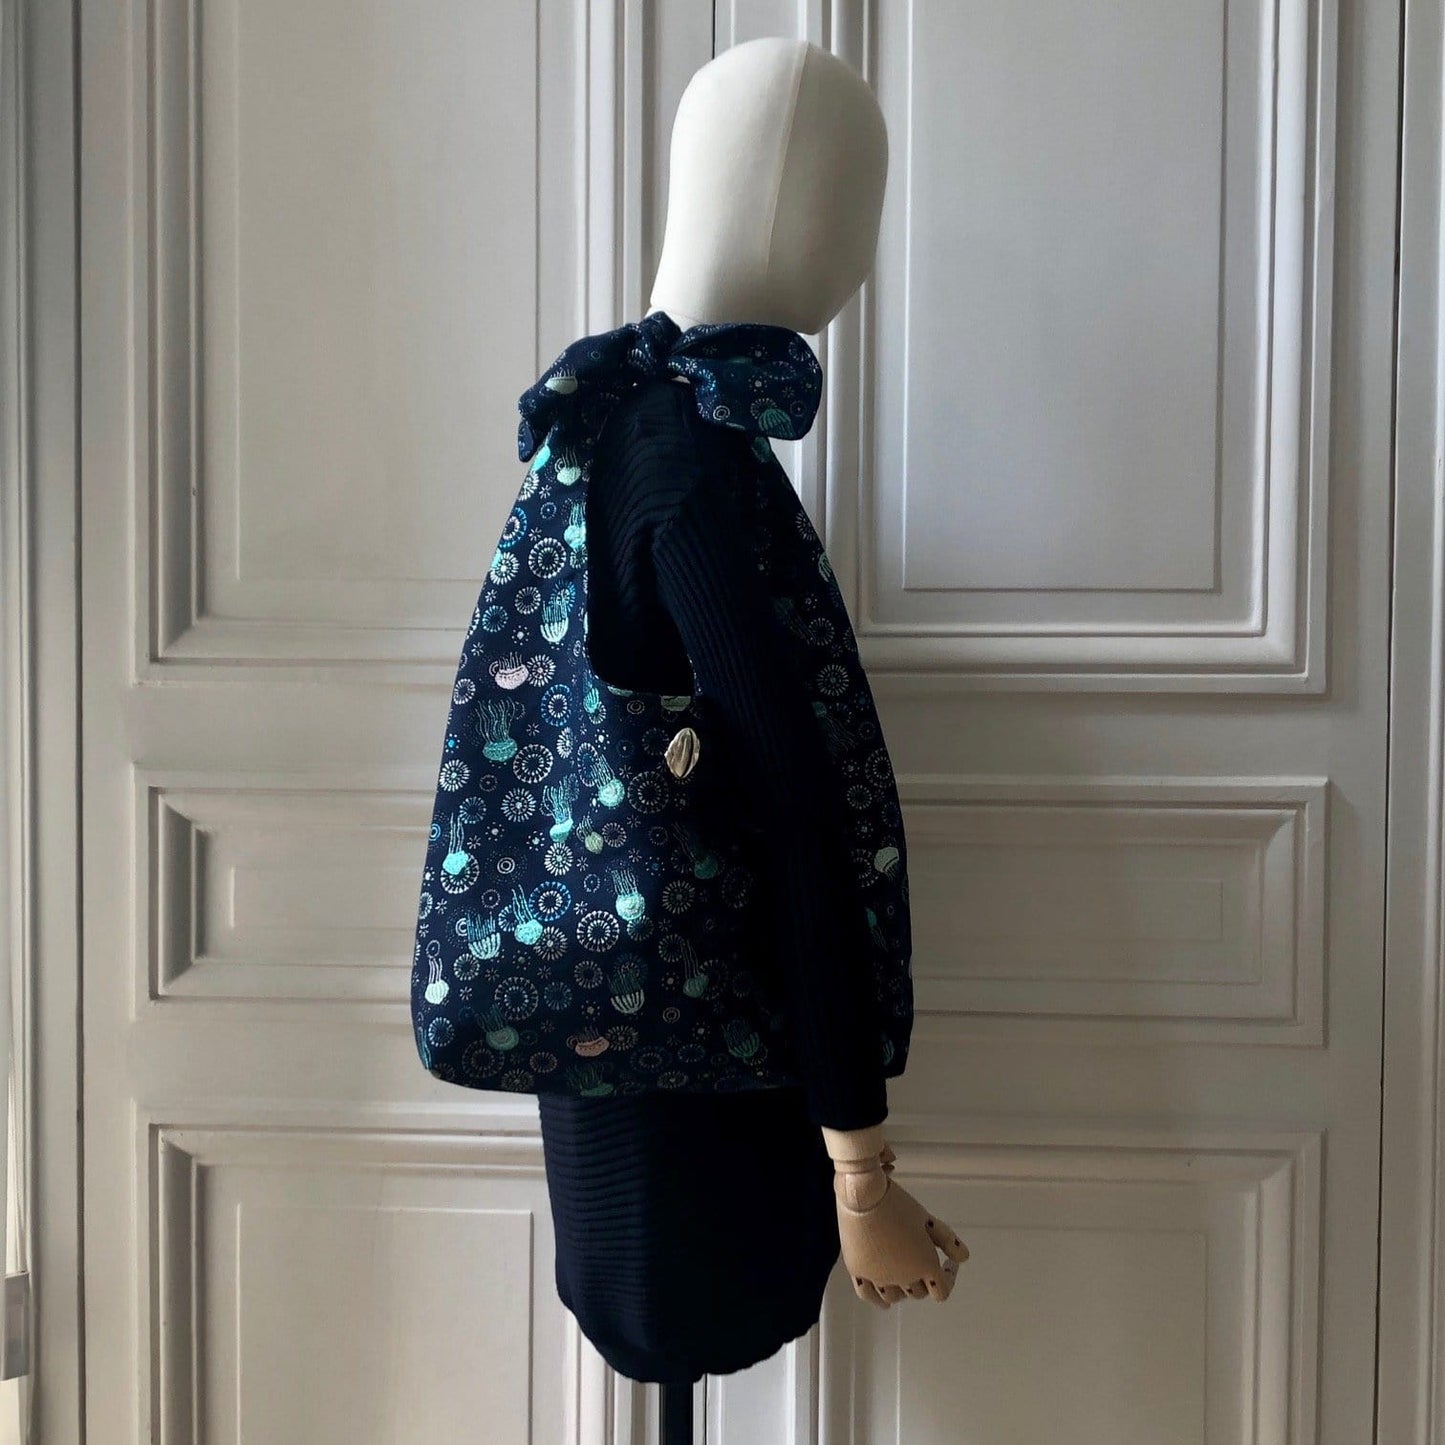 Sac Angèle en tweed méduses bleu marine, turquoise et argenté tissé et fabriqué en France